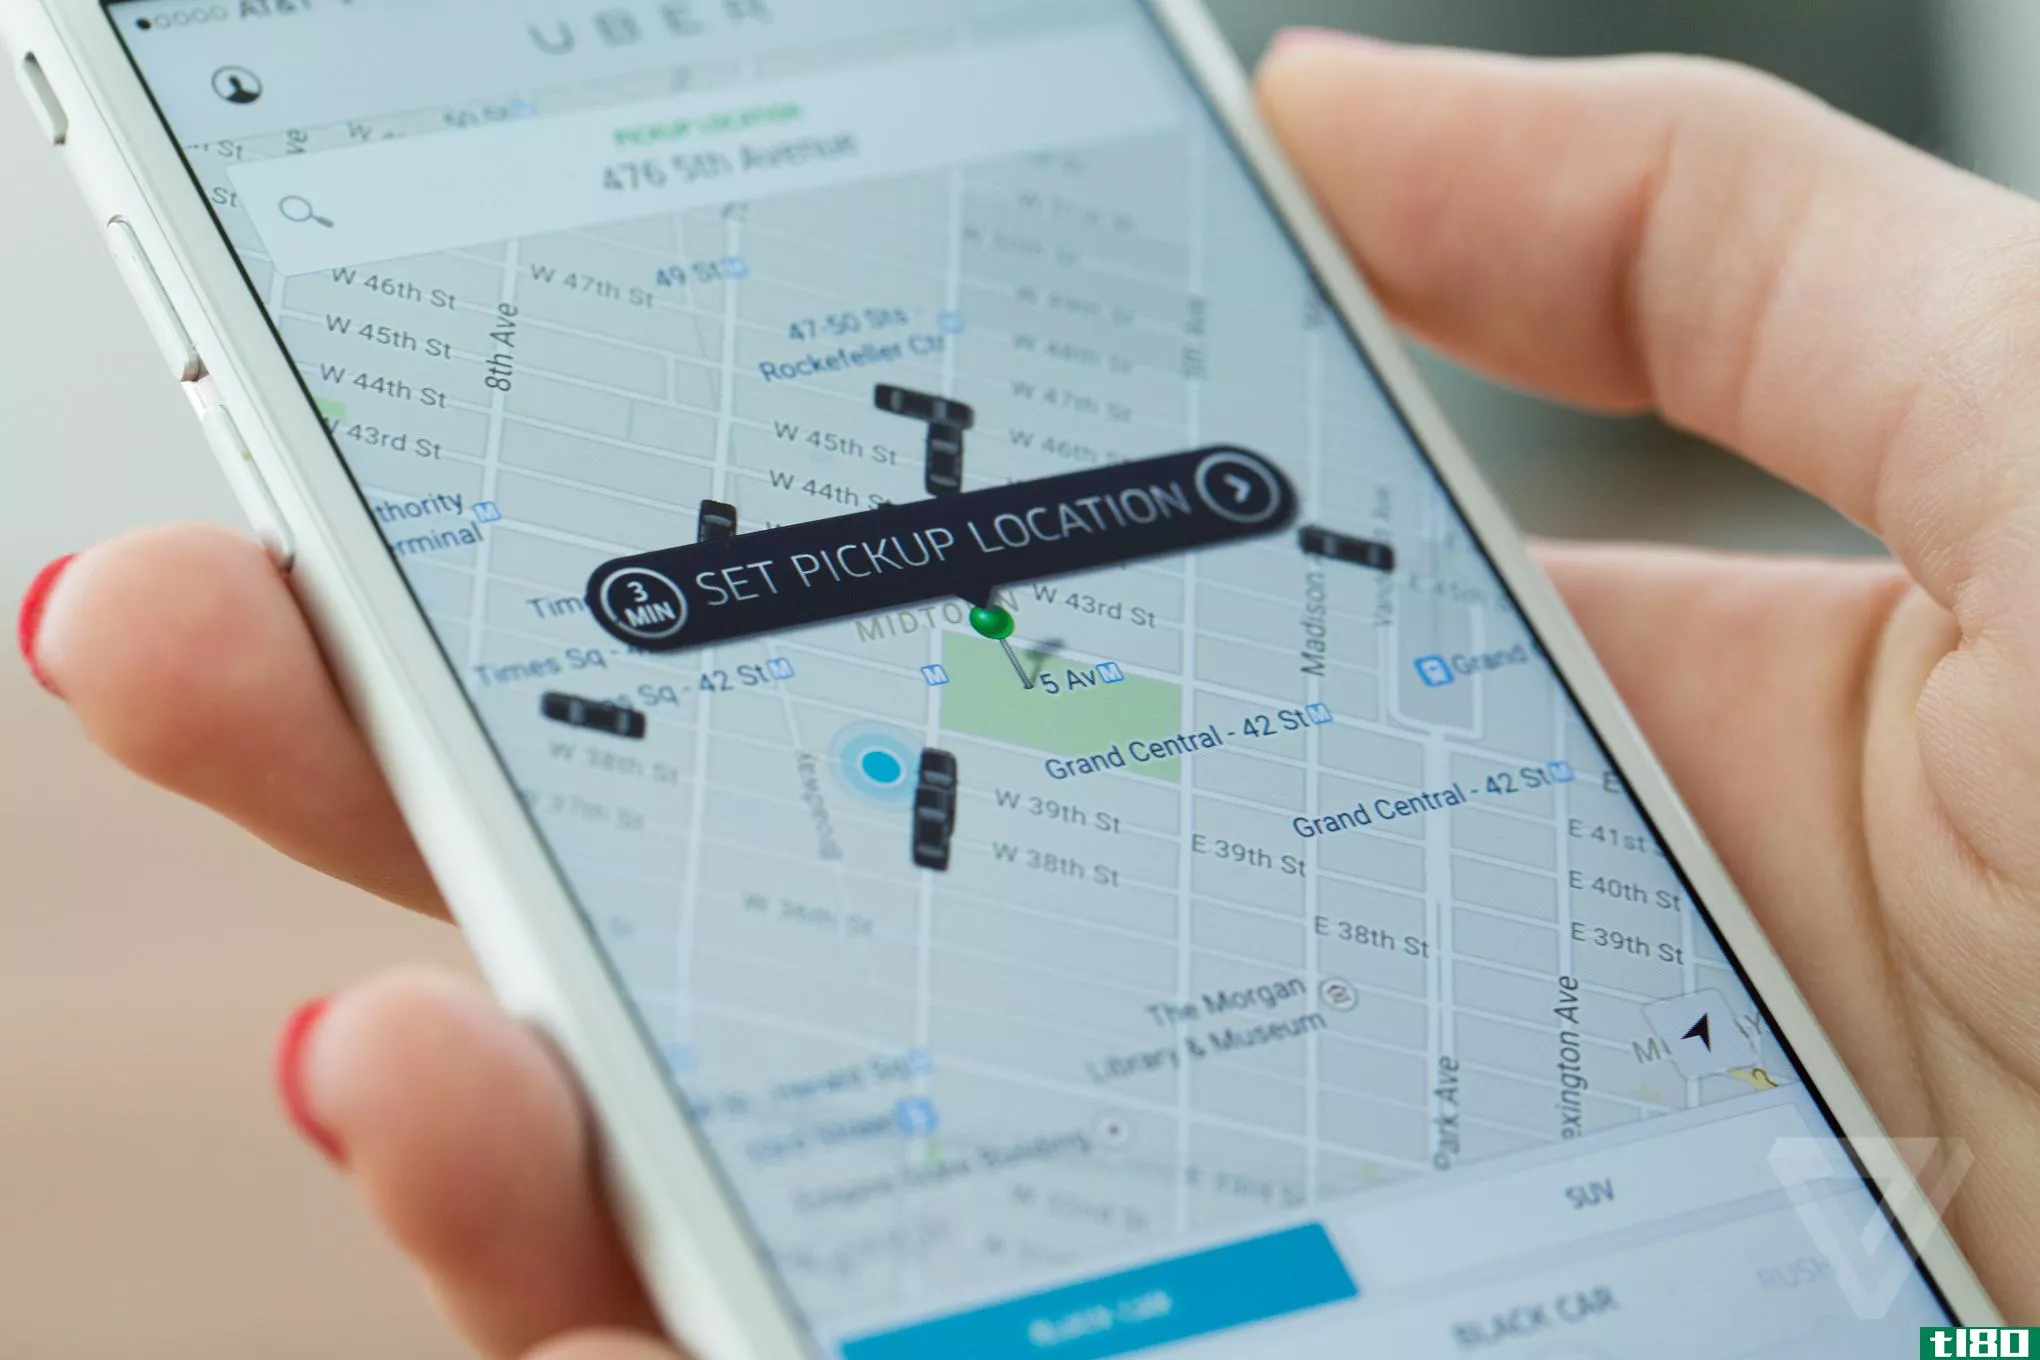 据报道，uber使用秘密的“地狱”软件追踪竞争对手lyft的司机